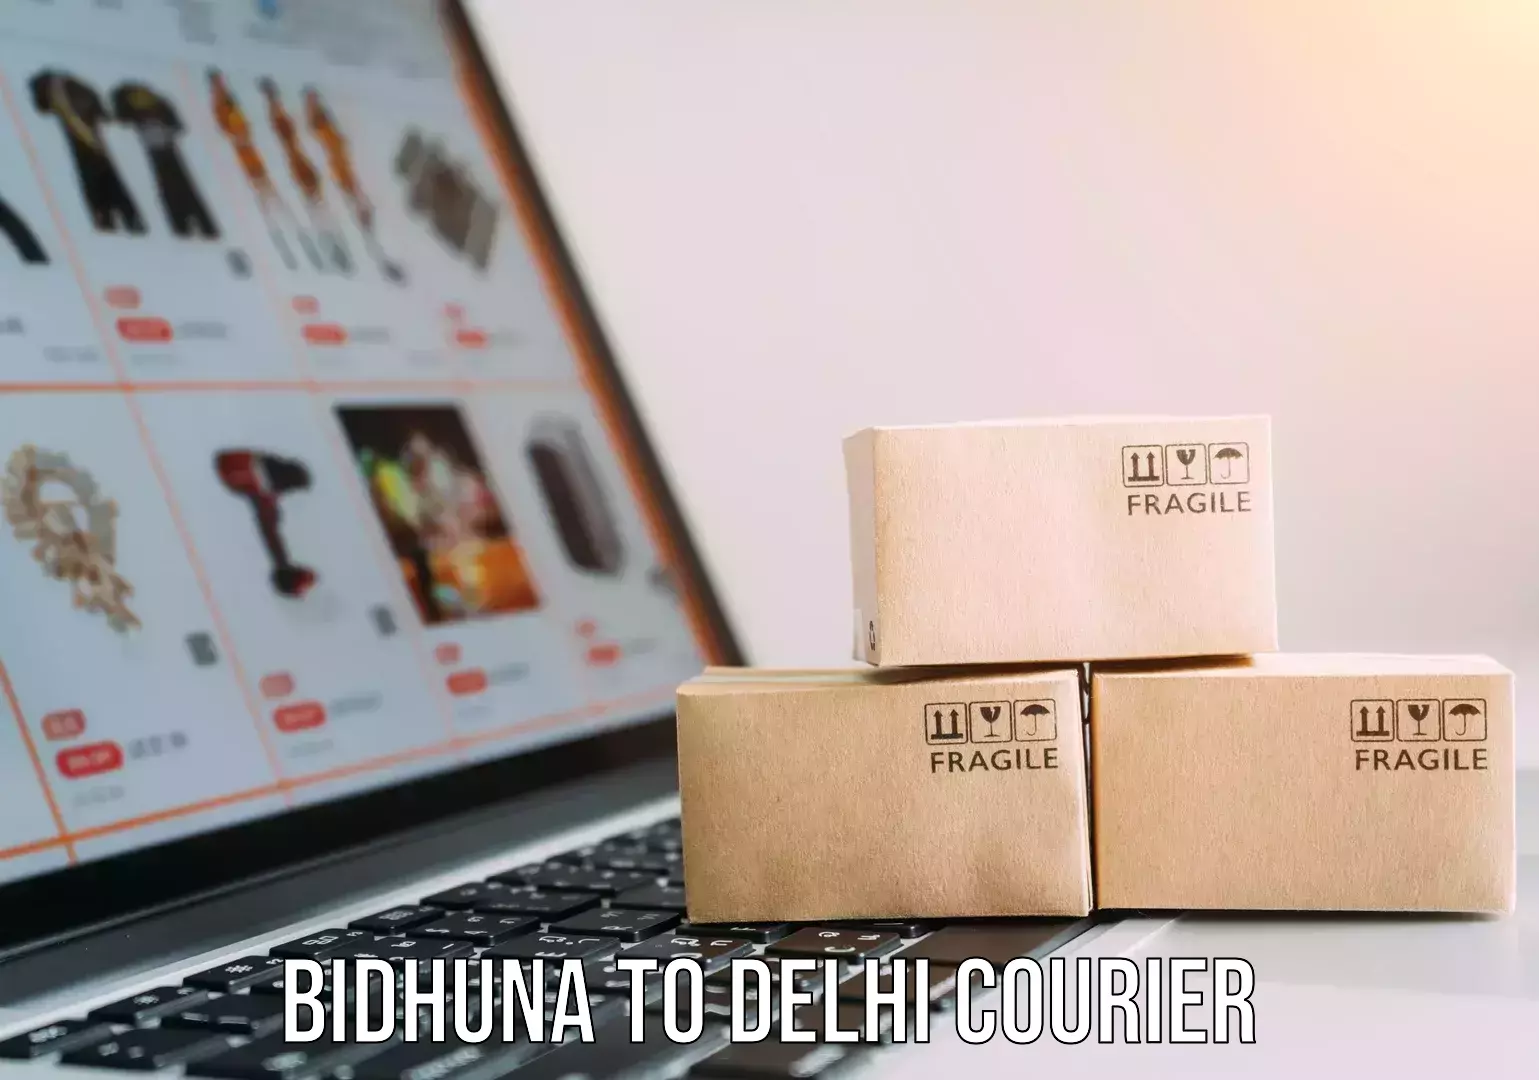 International courier networks Bidhuna to Delhi